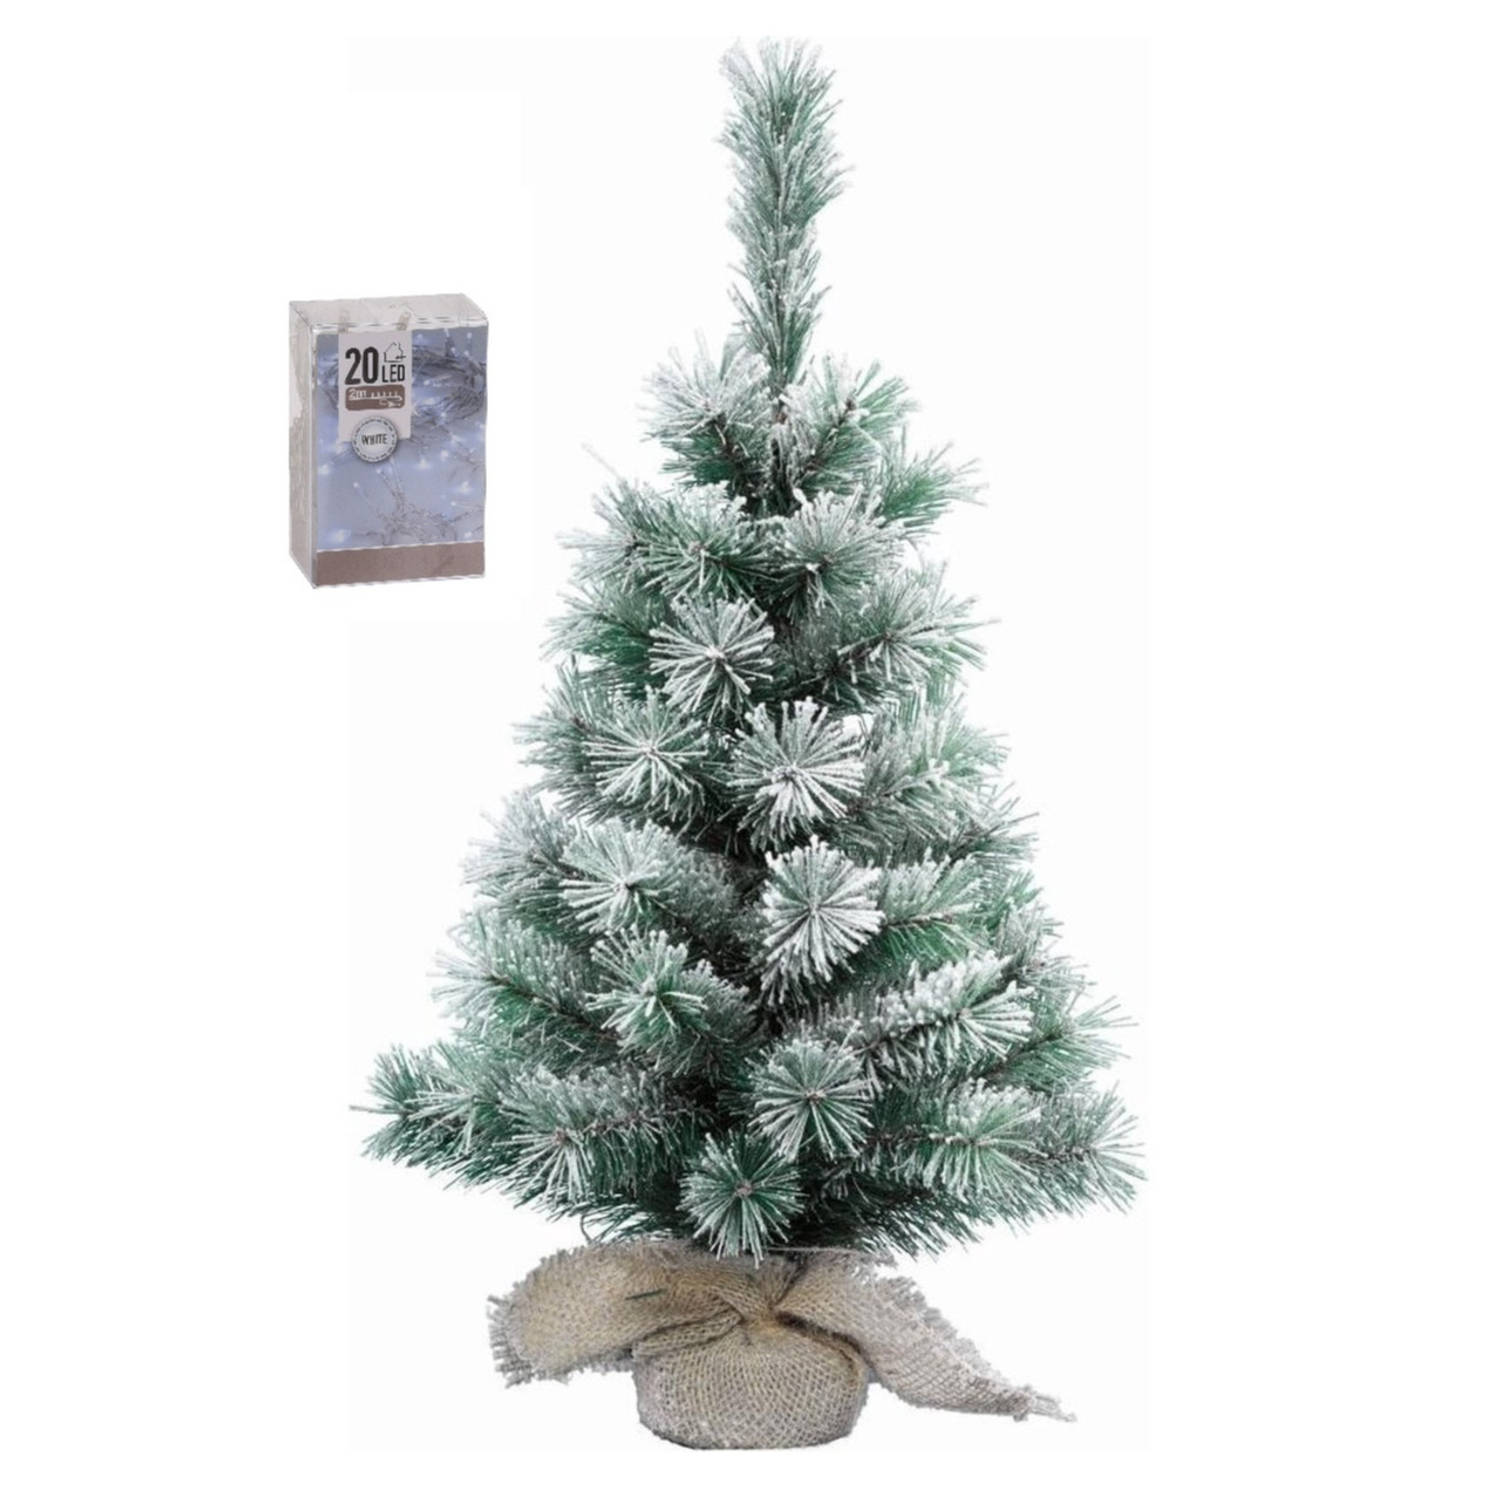 Kunst kerstboom met sneeuw 35 cm in jute zak inclusief 20 helder witte lampjes Kunstkerstboom